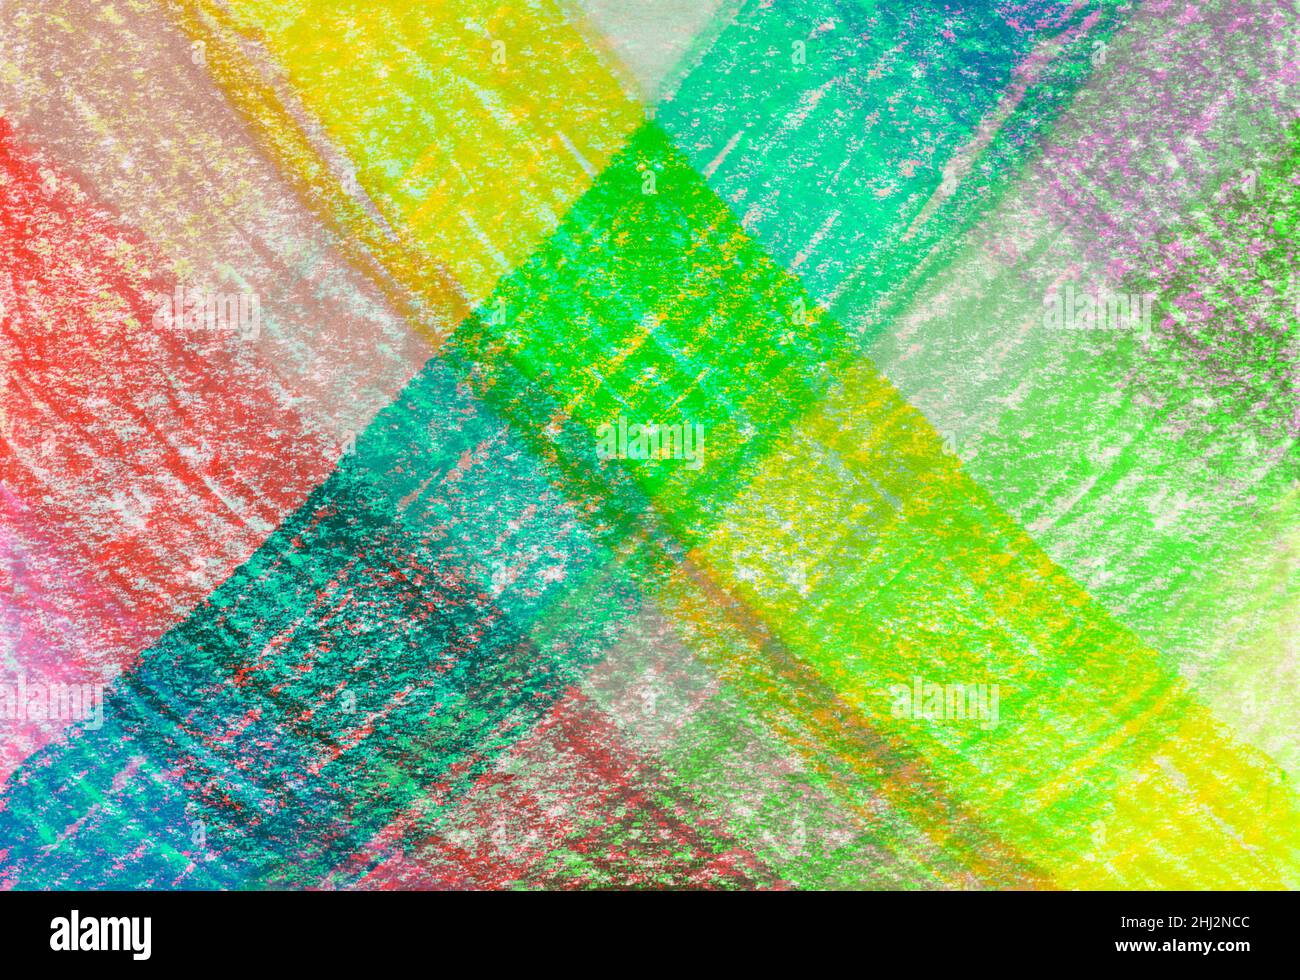 Handgezeichnete farbige Wachsmalstift-Textur. Farbenfrohes Overlay. Abstrakt kreative strukturierte Hintergrund für Poster, Banner, Karten, Scrapbook. Dekorative Oberfläche. Stockfoto